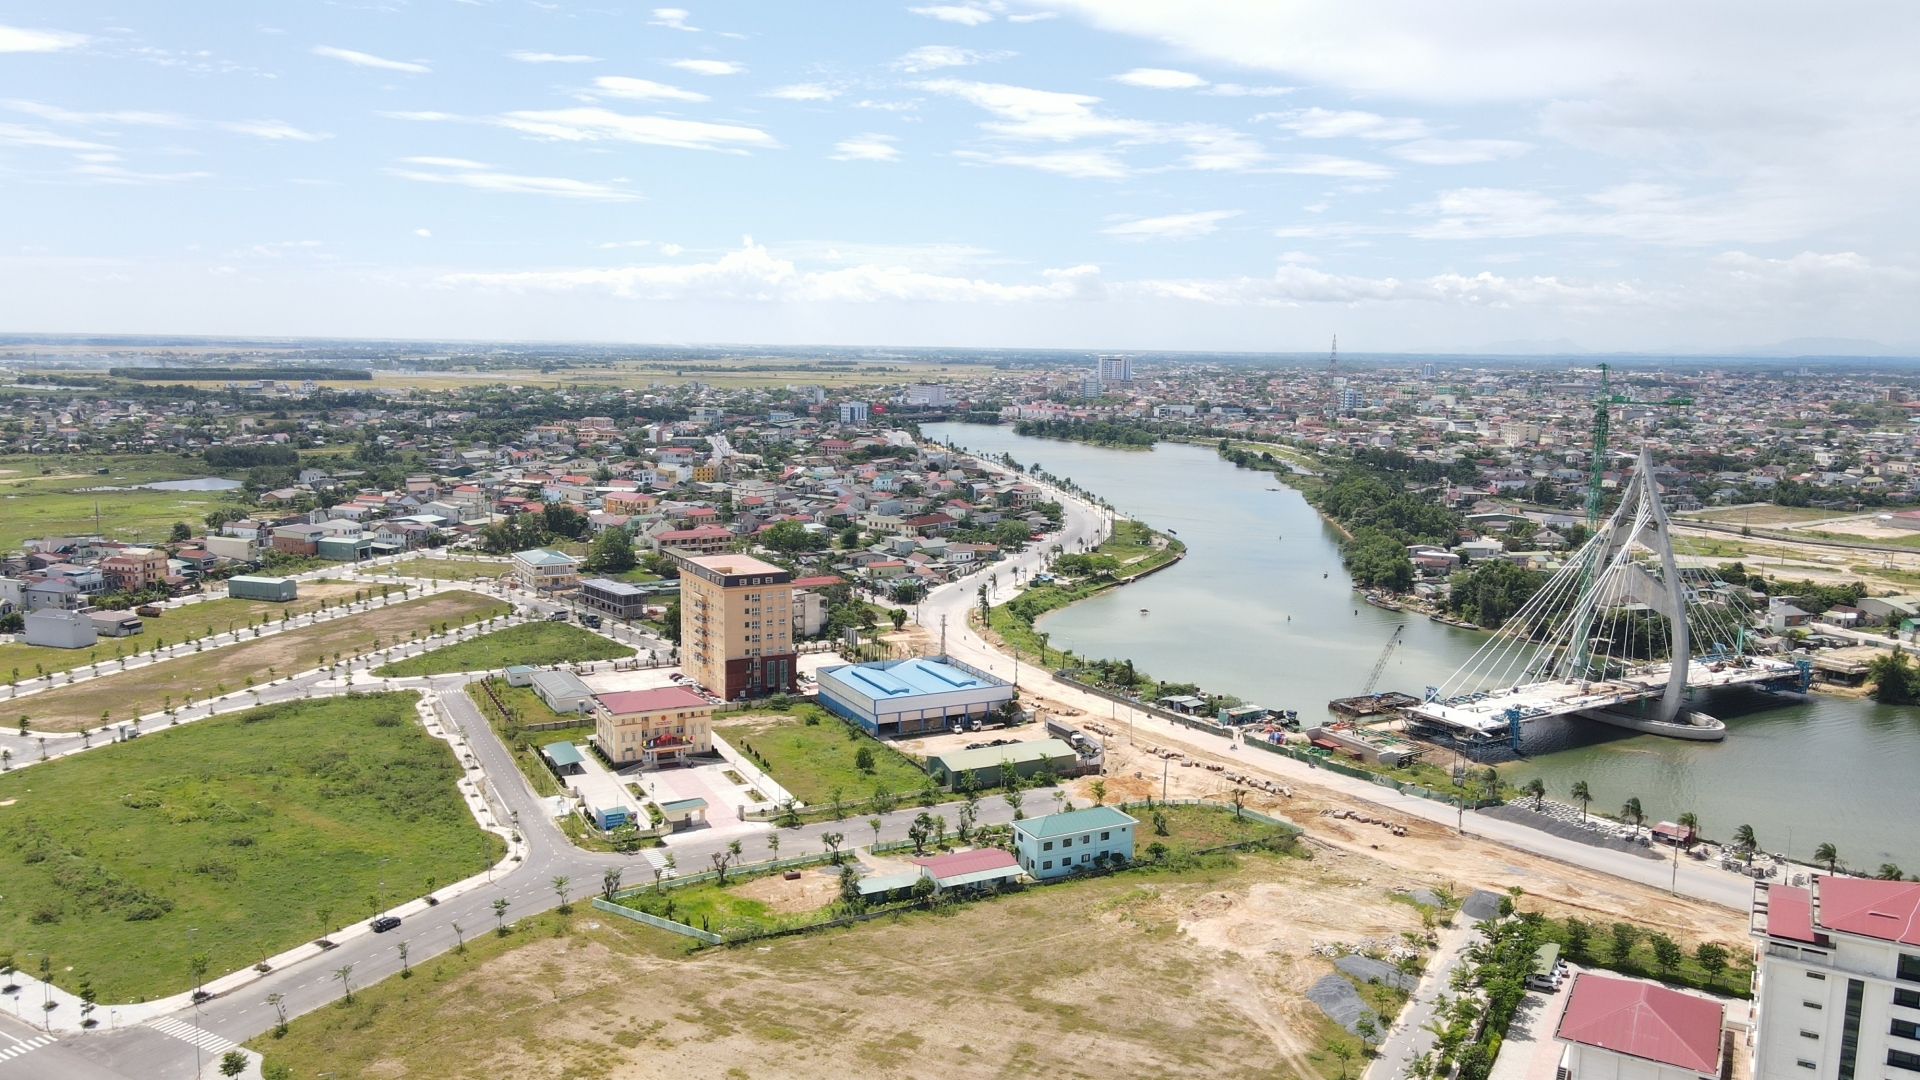 Quy hoạch đô thị ở Quảng Trị: Tầm nhìn... “chưa kịp quyết toán”